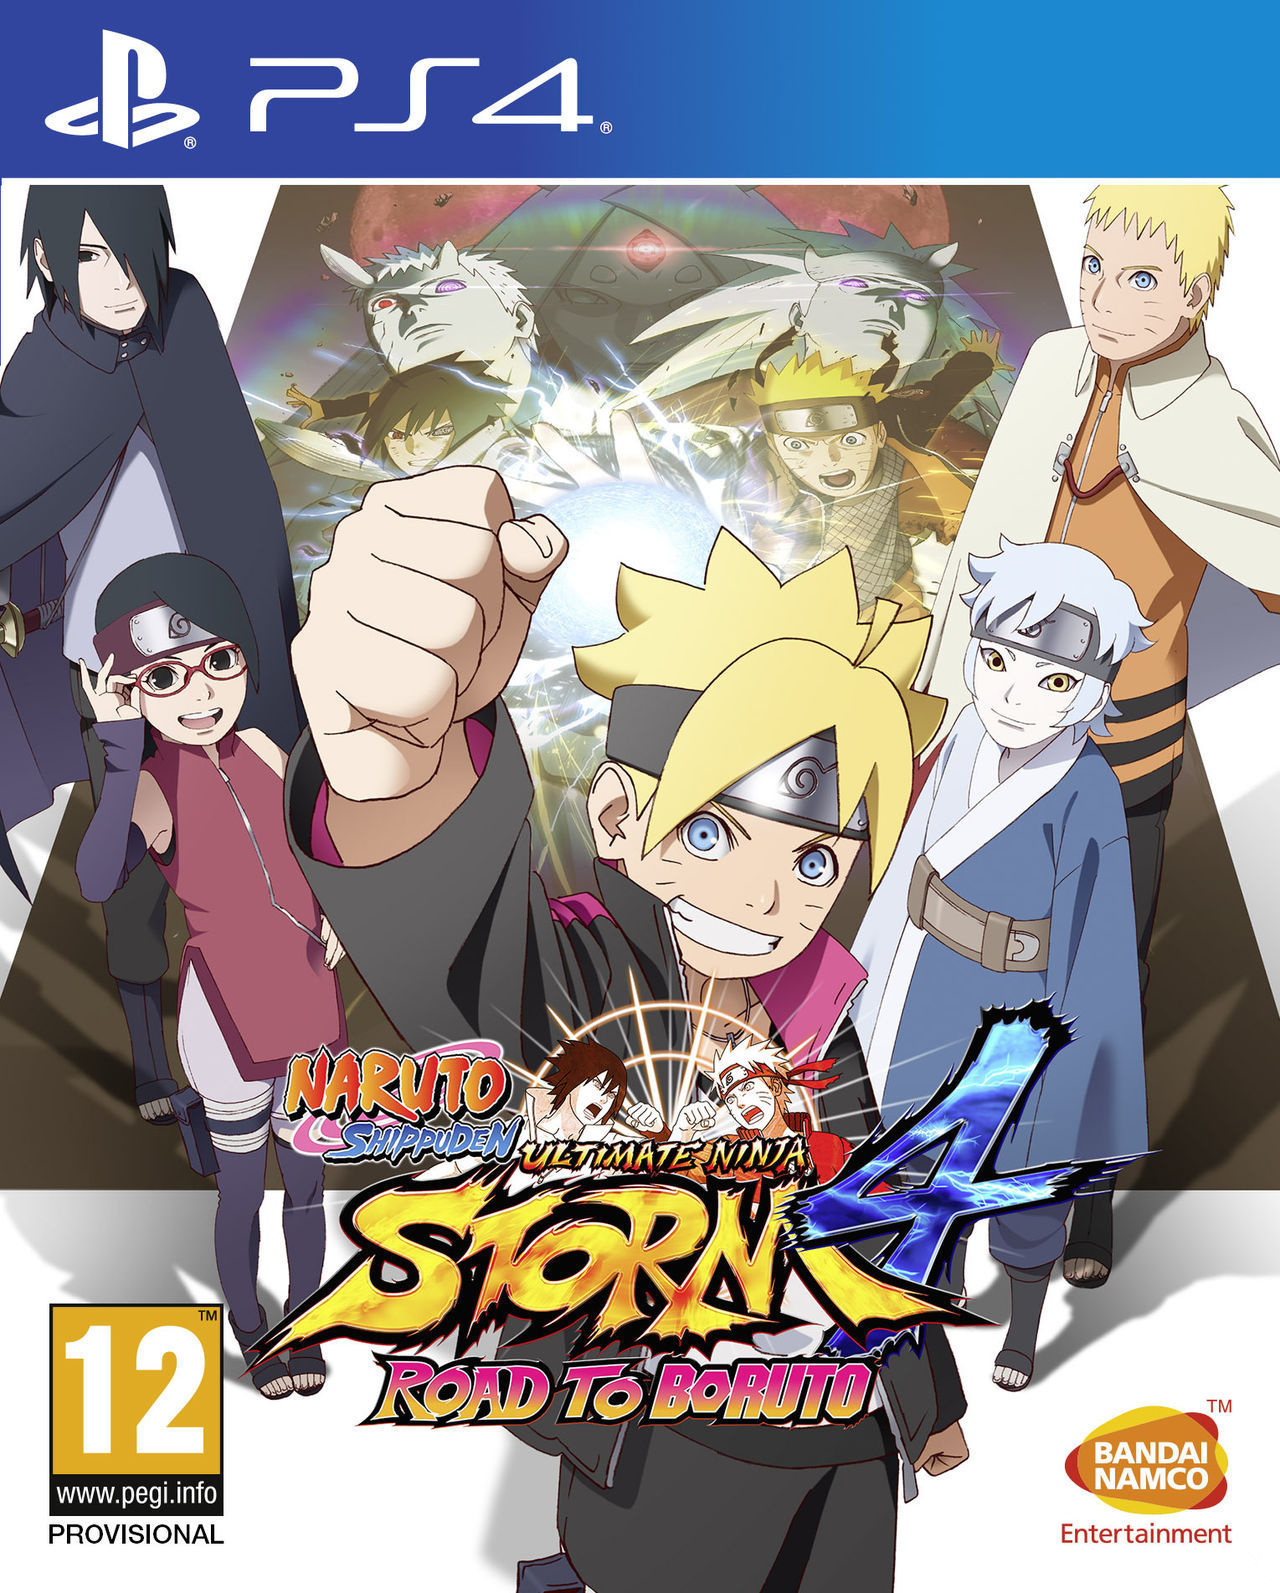 Naruto Storm 4 Naruto Storm 4 Road to boruto